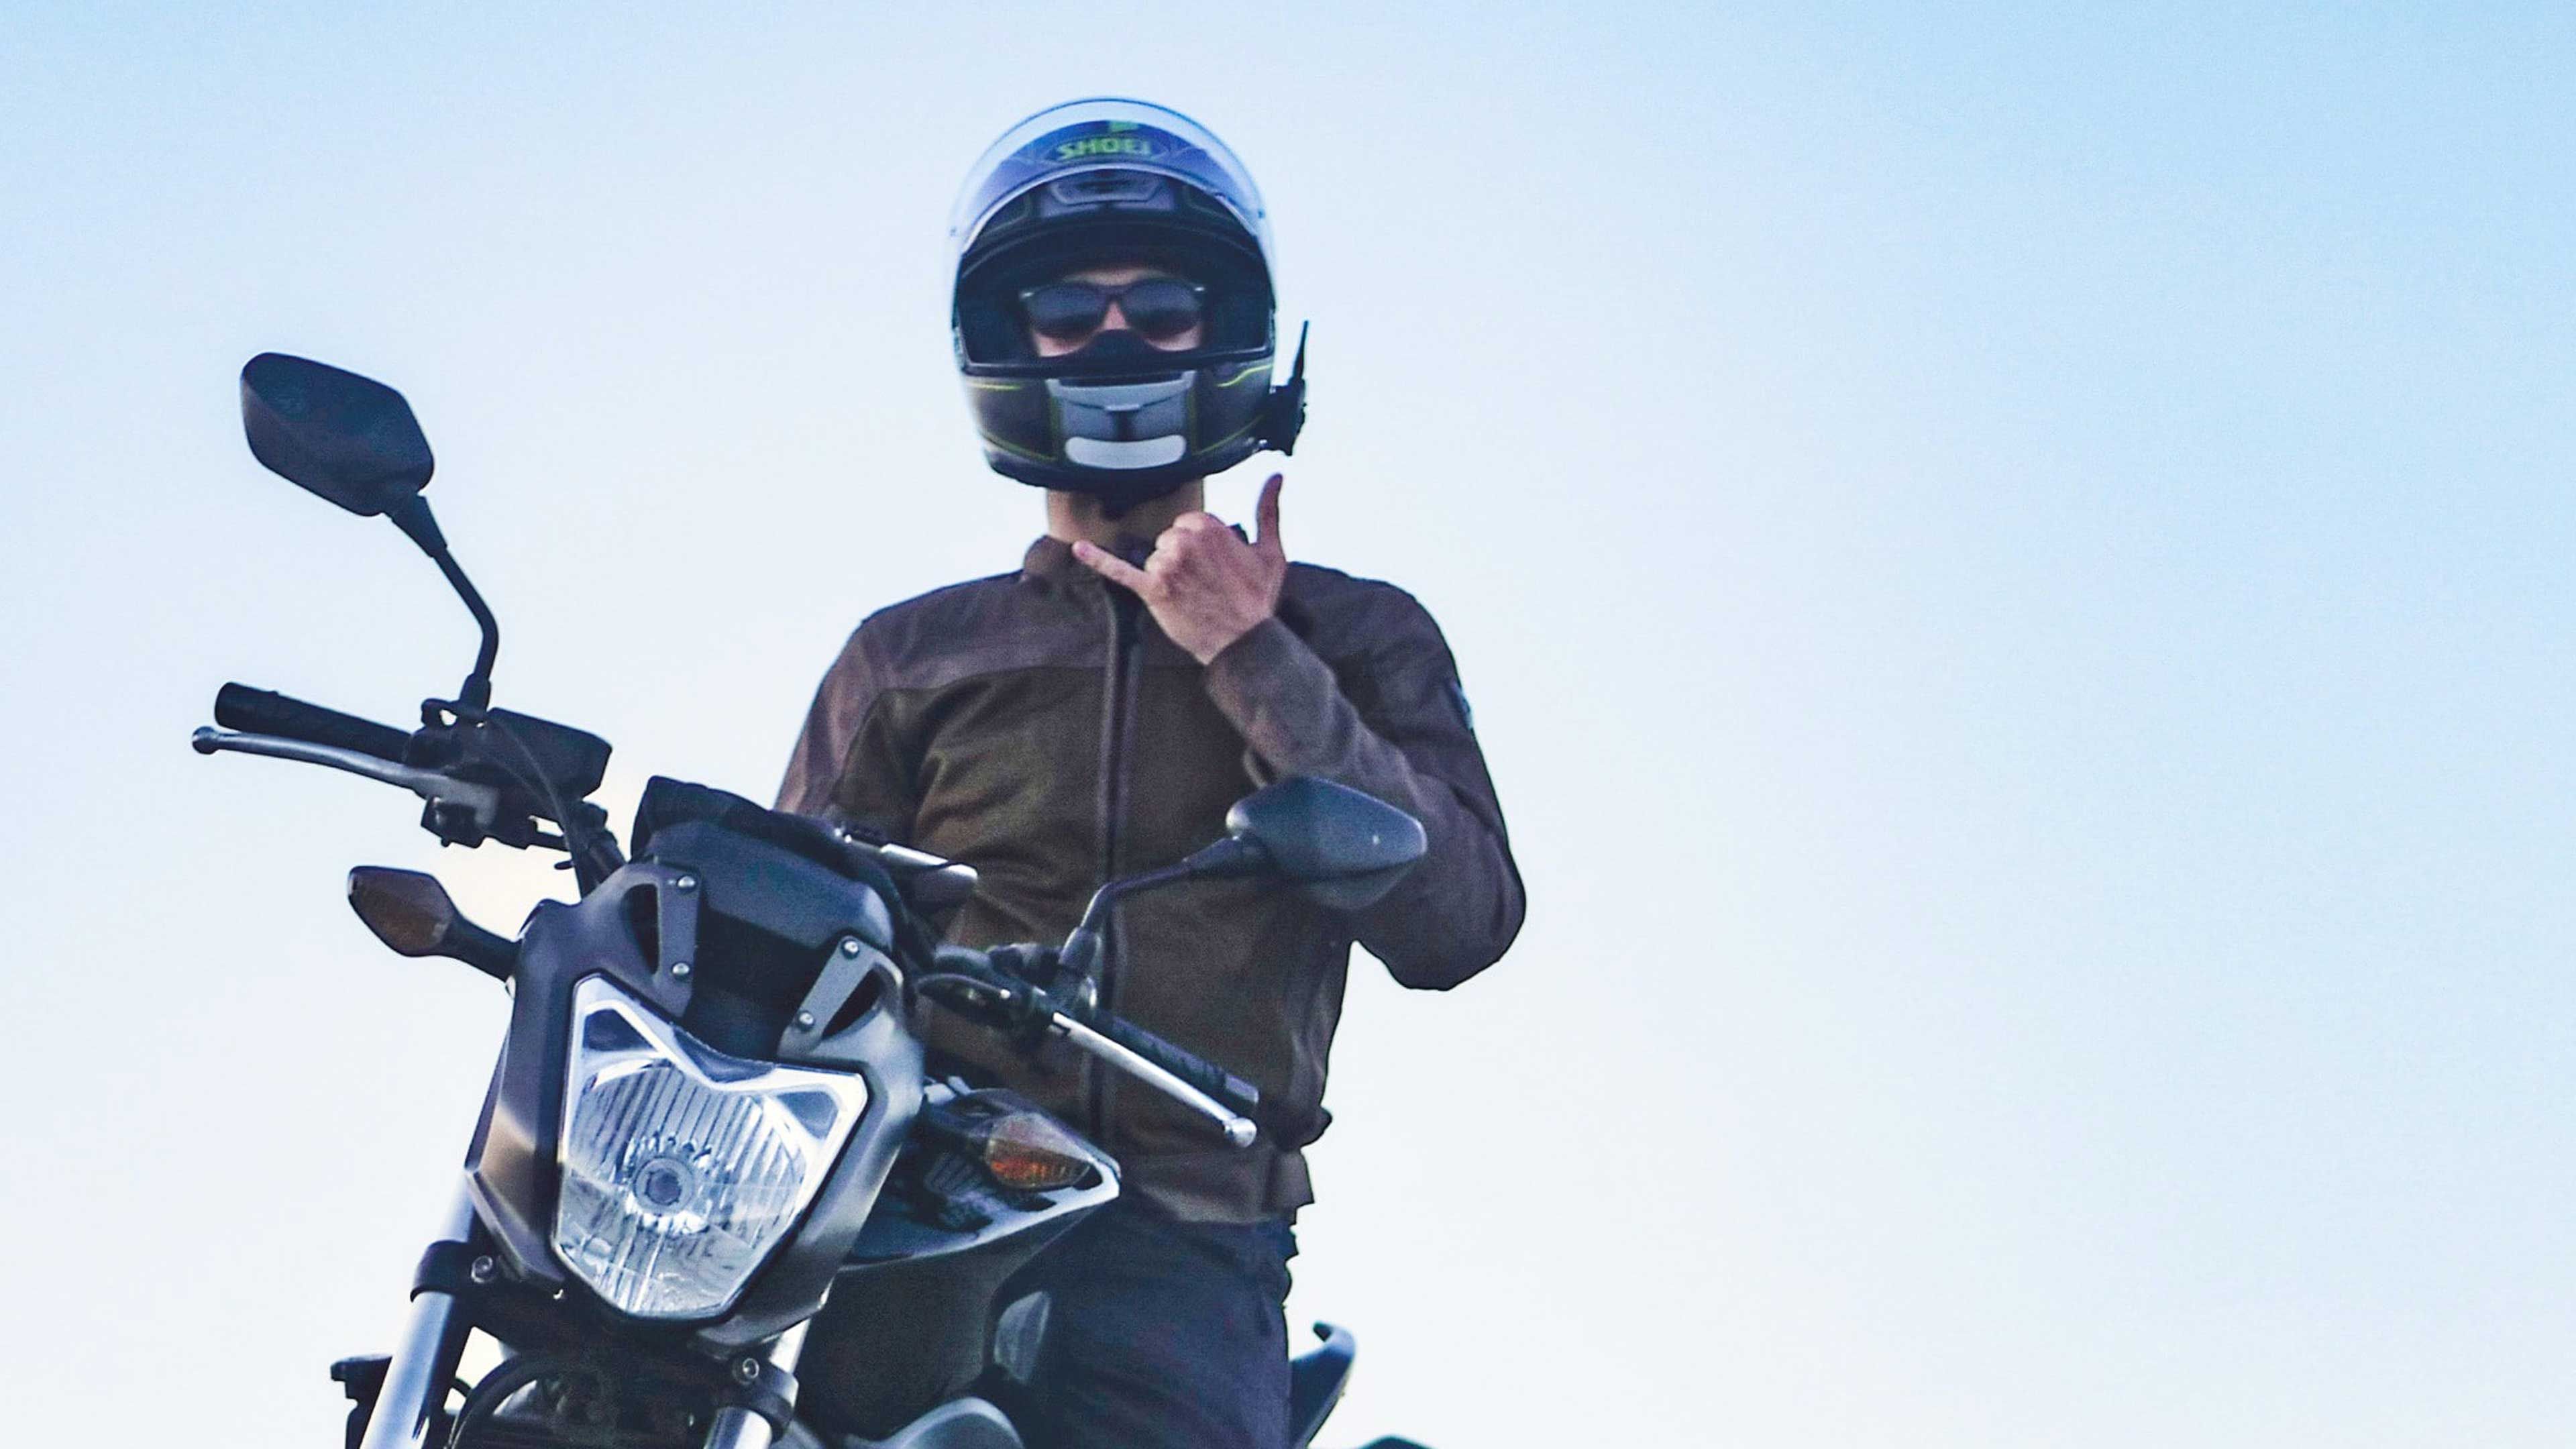 Liquidación en cascos de moto en Ebay: decenas de diseños de primer nivel en oferta a precio de escándalo